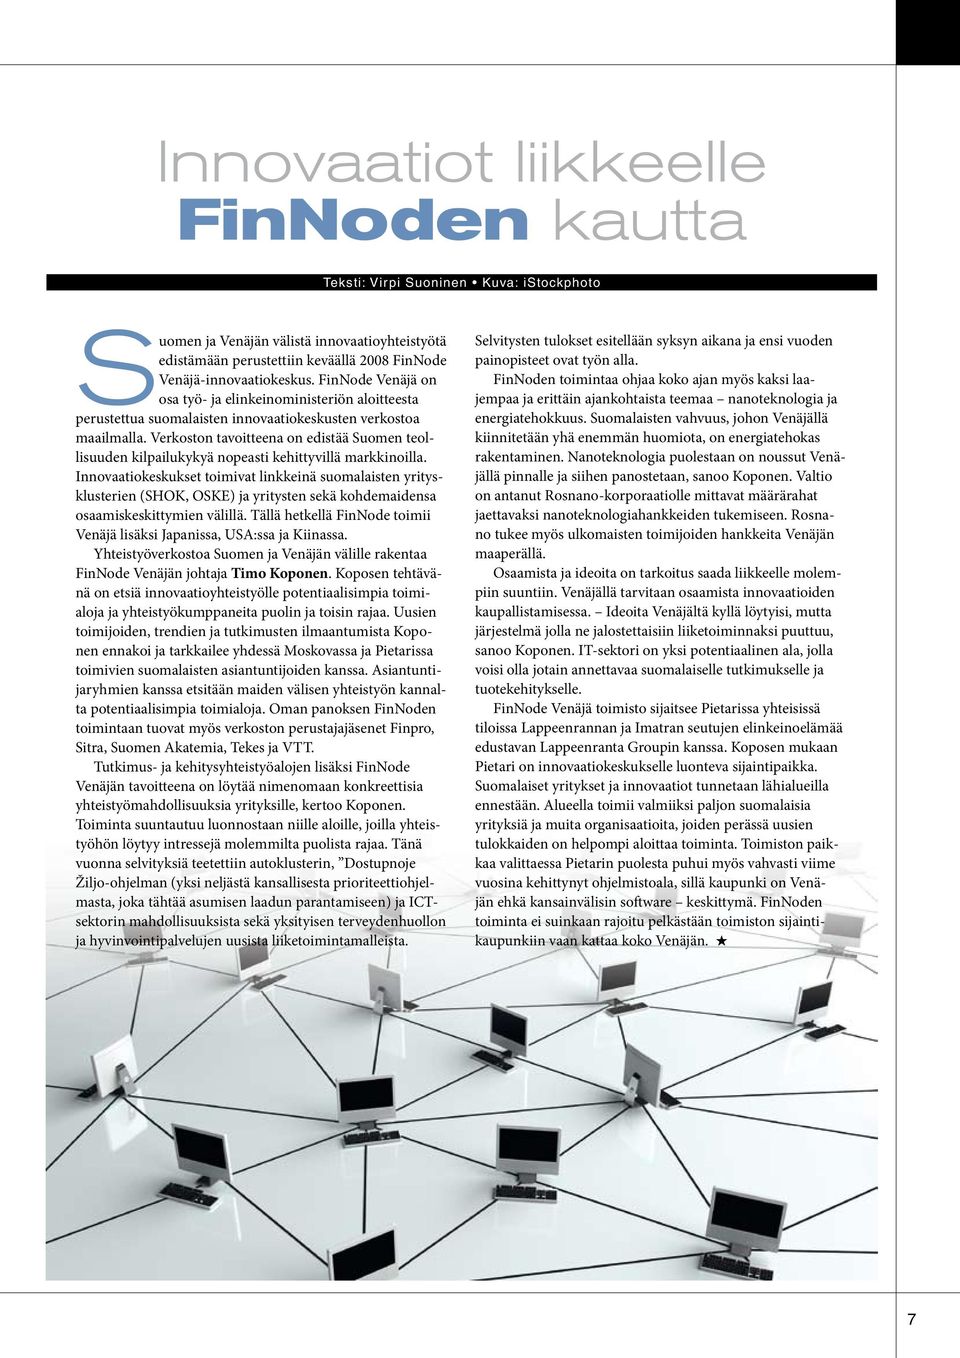 Verkoston tavoitteena on edistää Suomen teollisuuden kilpailukykyä nopeasti kehittyvillä markkinoilla.